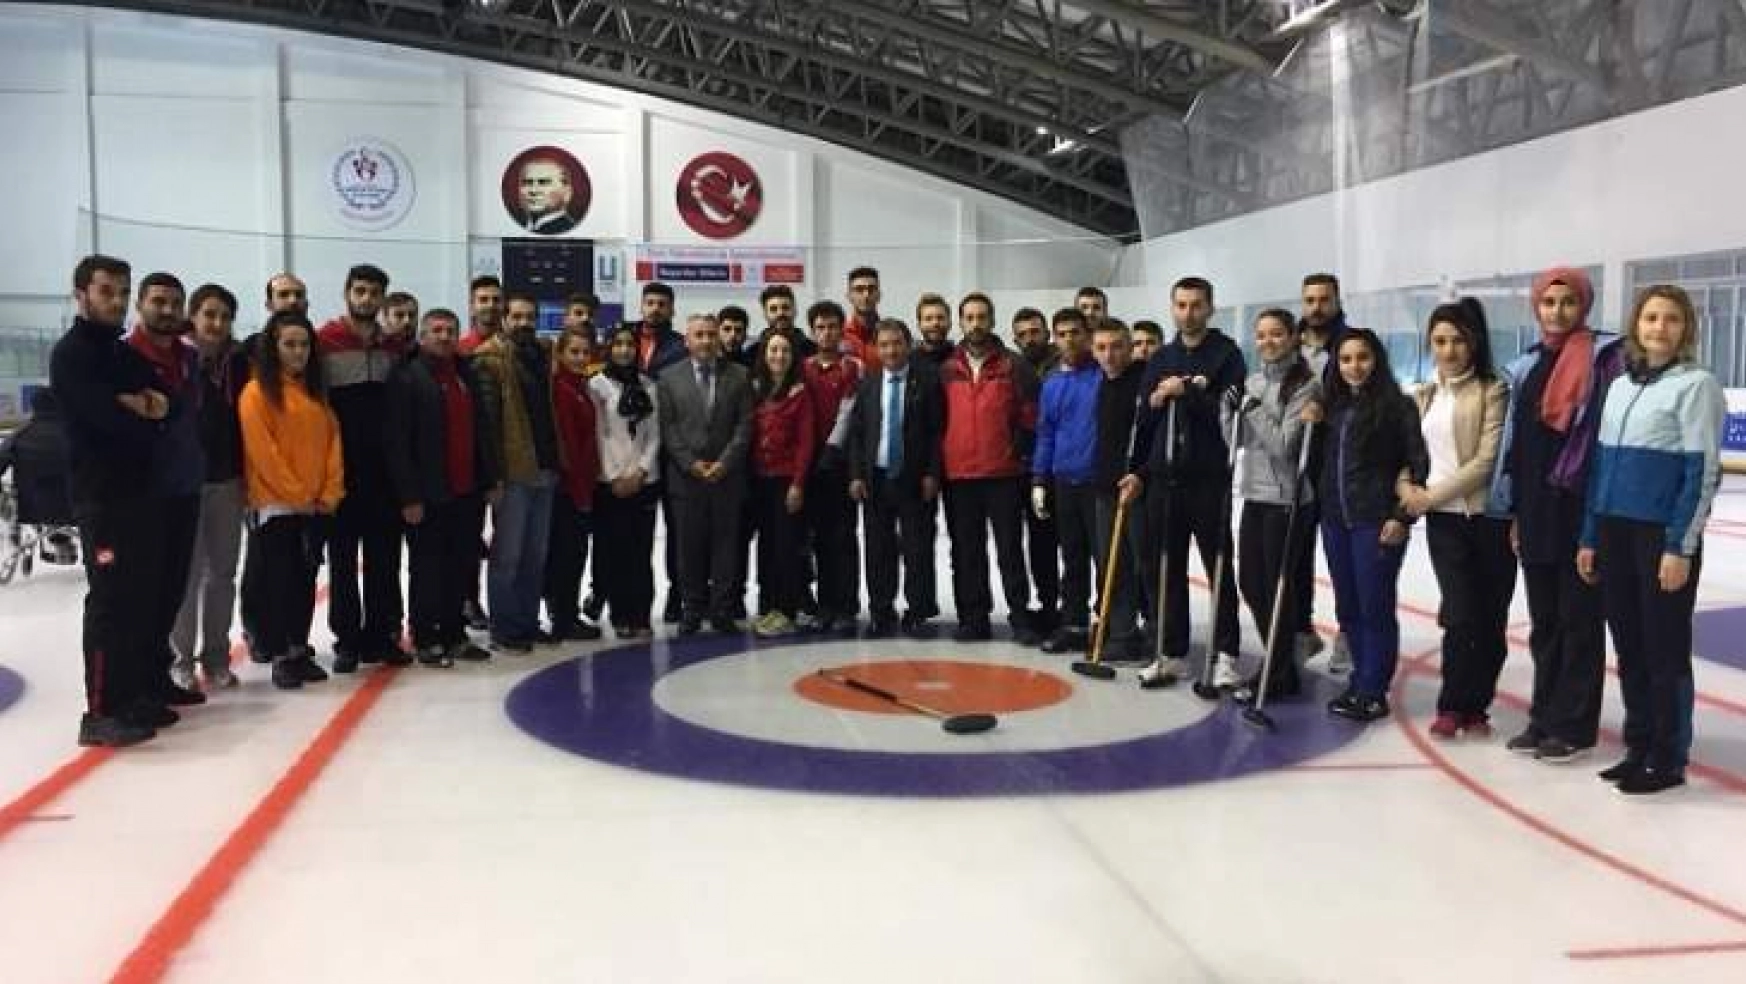 Erzurum'da geleceğin curling antrenörleri eğitiliyor